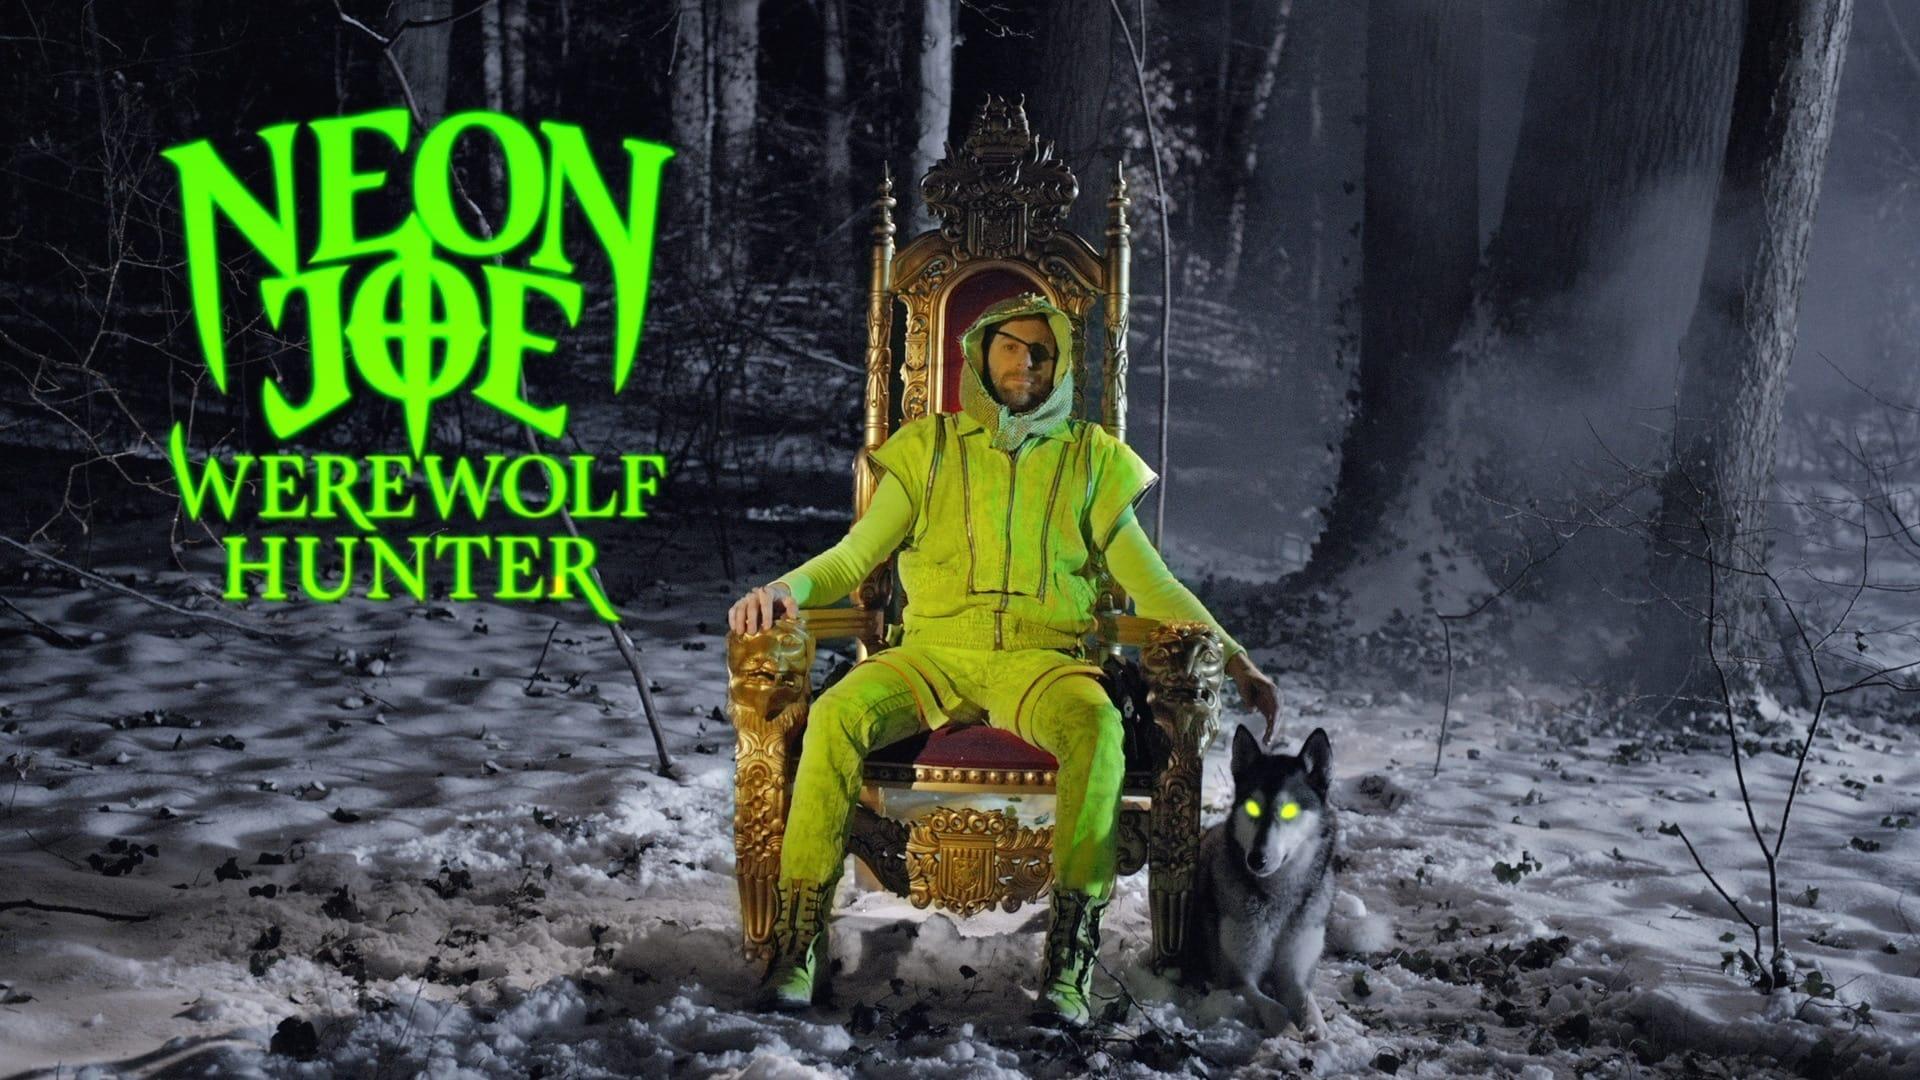 Neon Joe, Werewolf Hunter backdrop